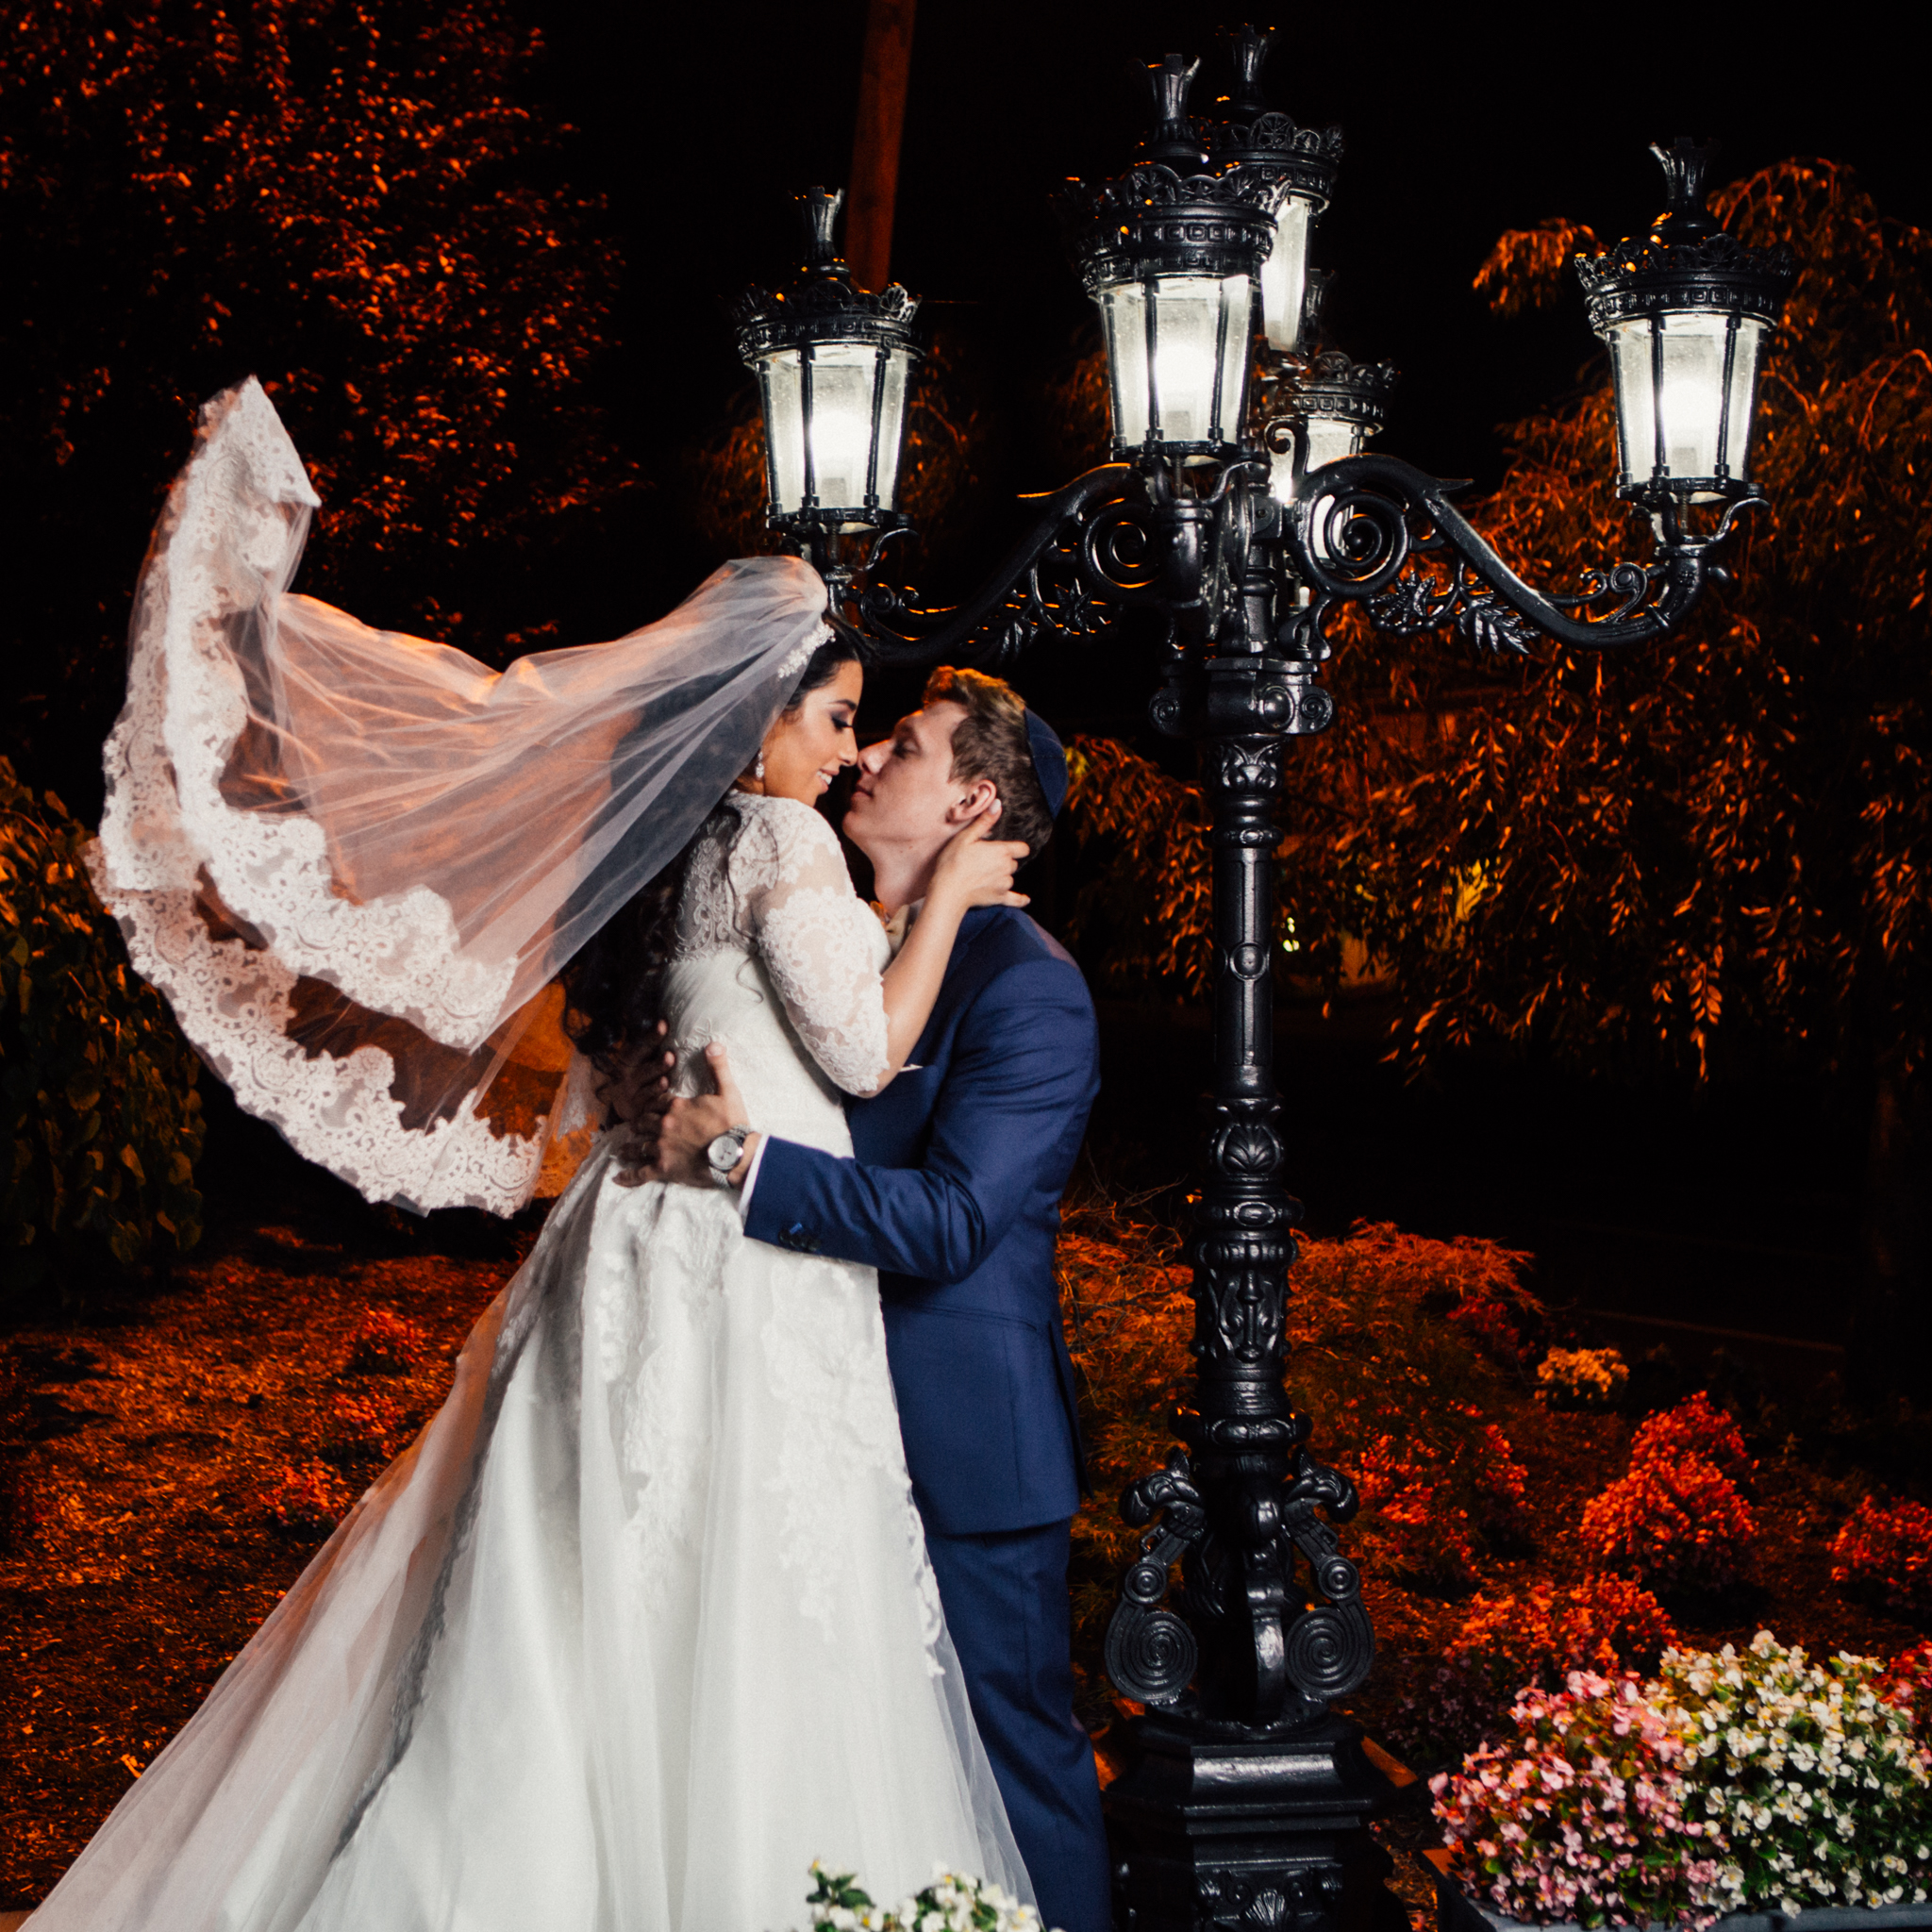 Wedding Etya & Sergey - Eliau Piha studio photography, new york, events, people-0493.jpg